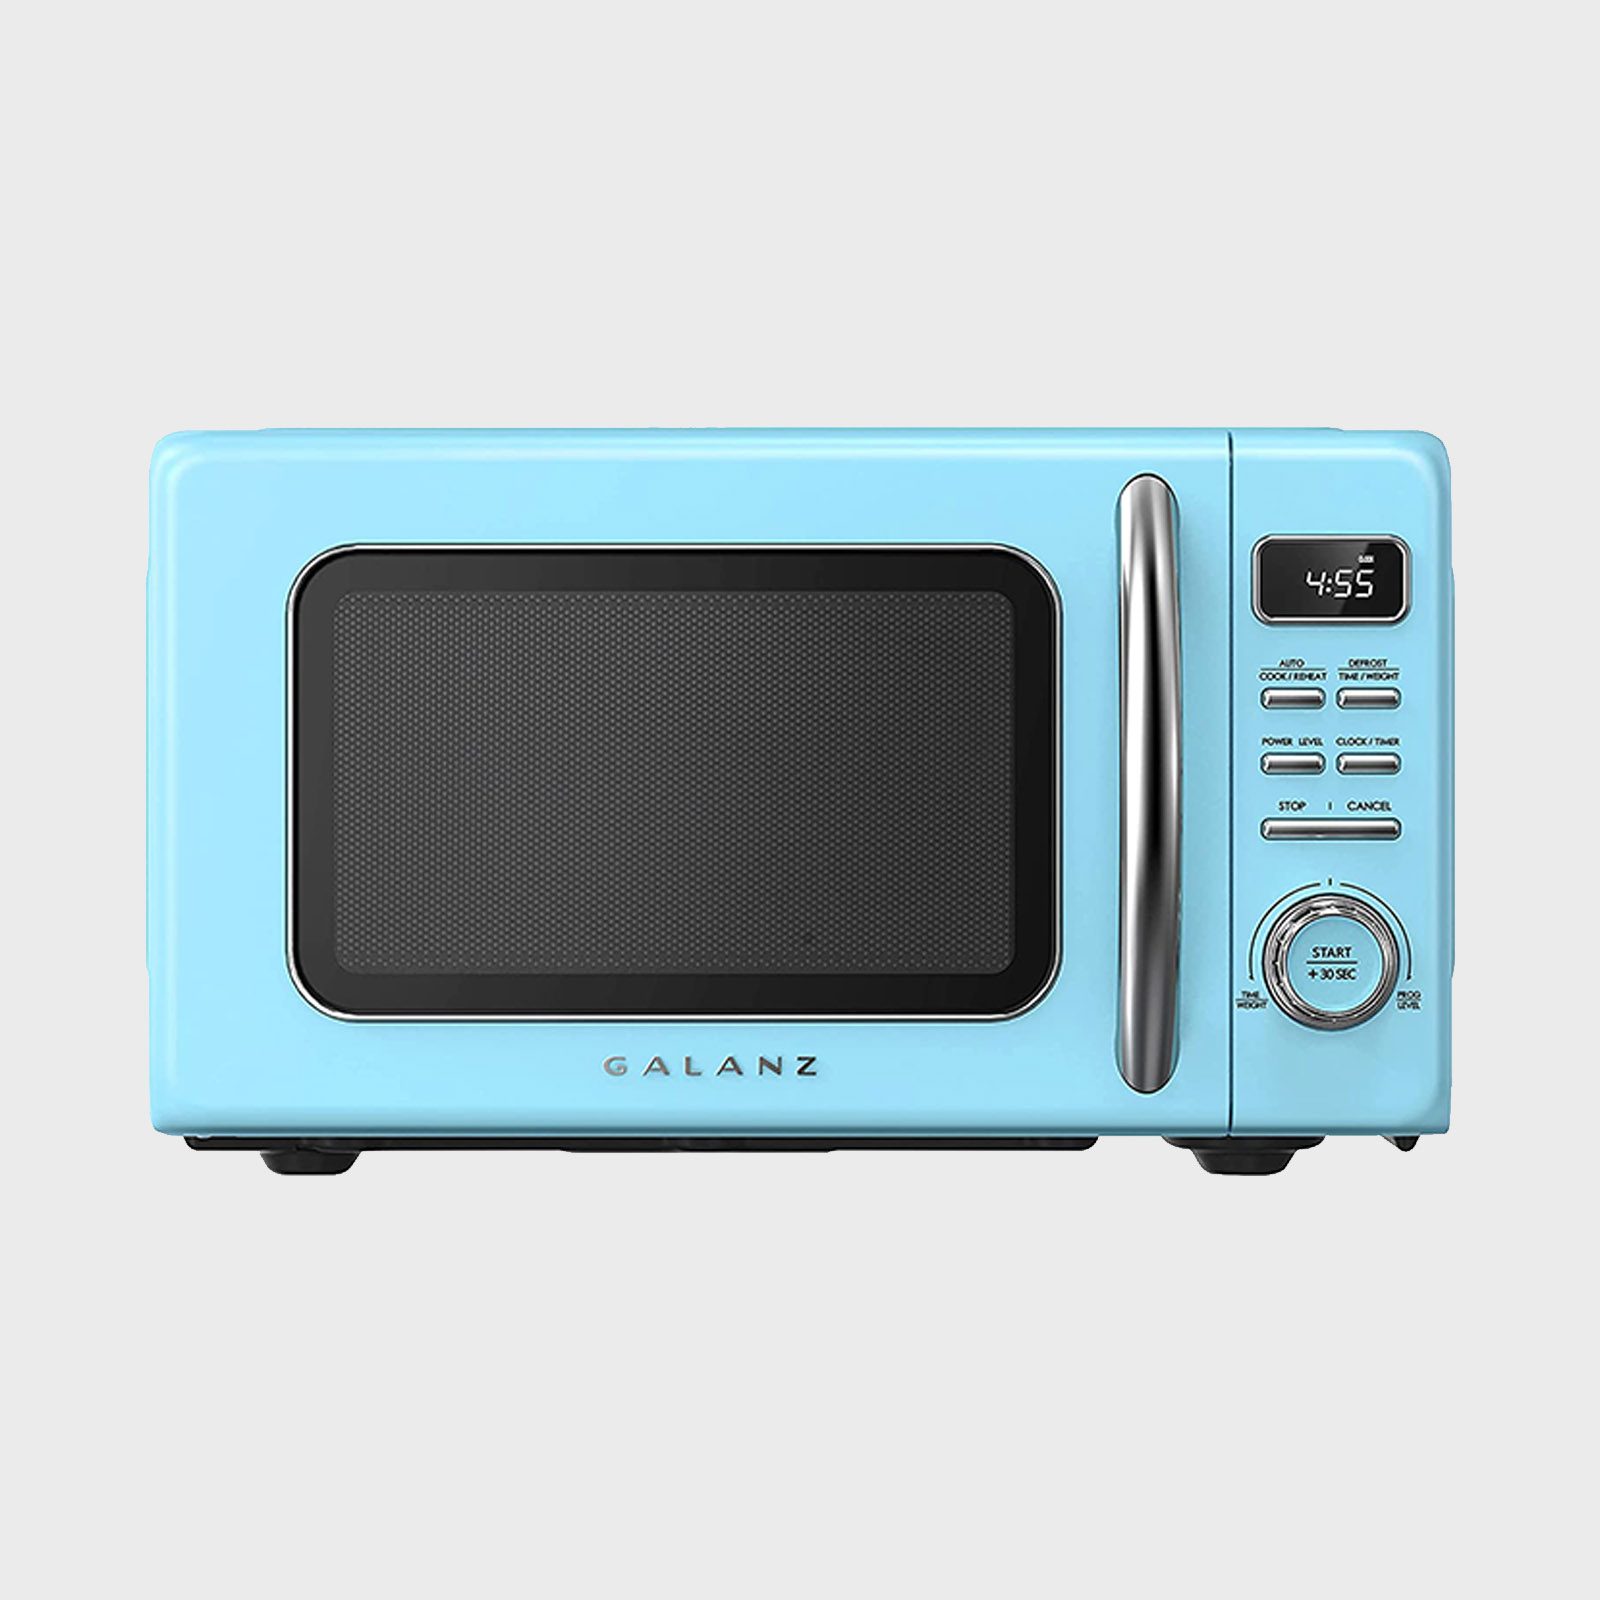 Galanz Retro Countertop Microwave Oven Via Amazon